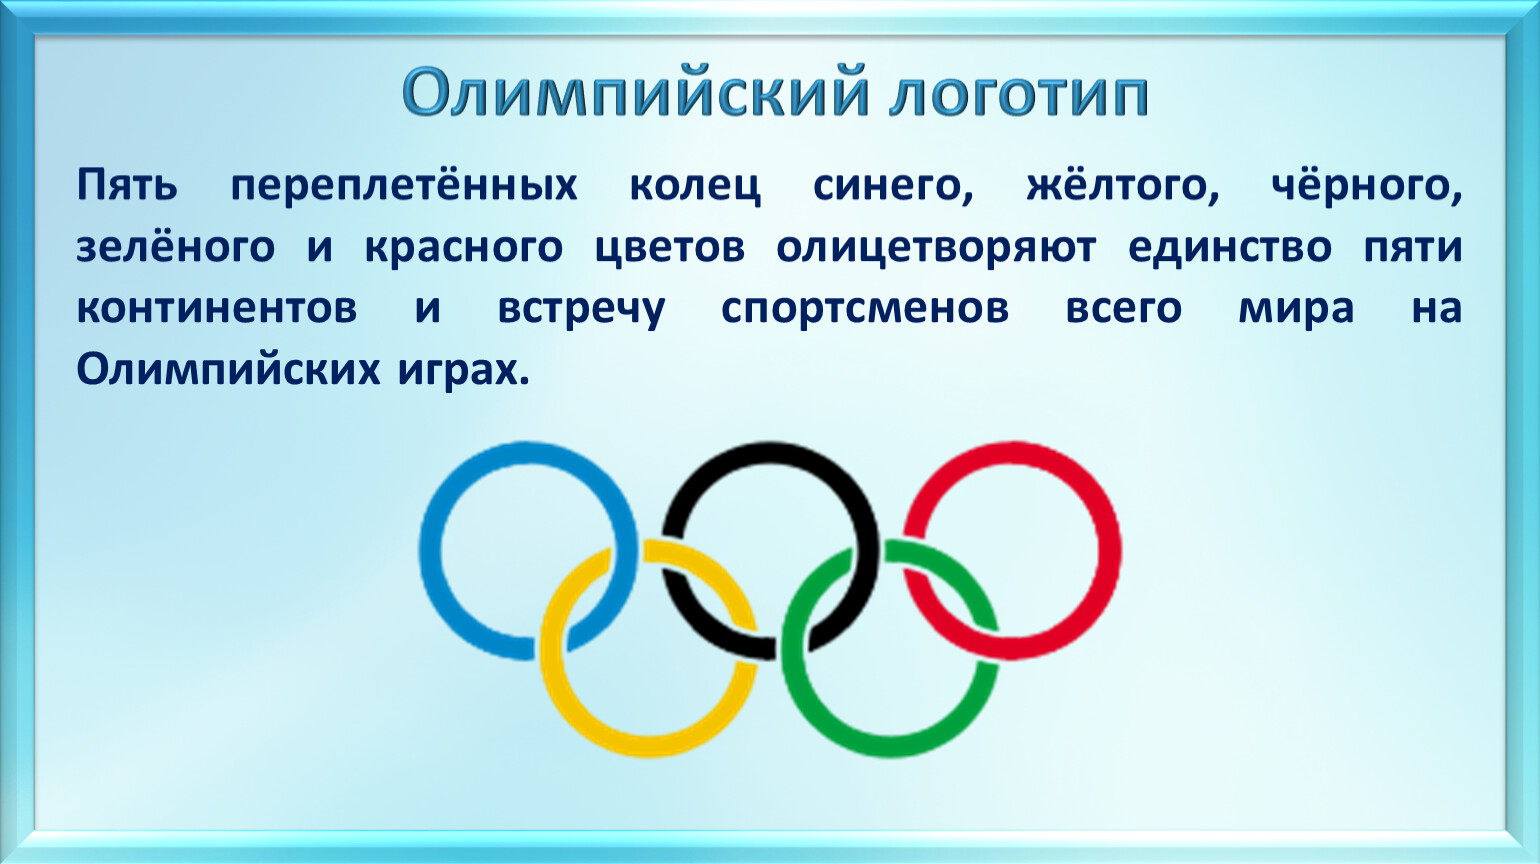 Пять переплетенных колец олимпийской